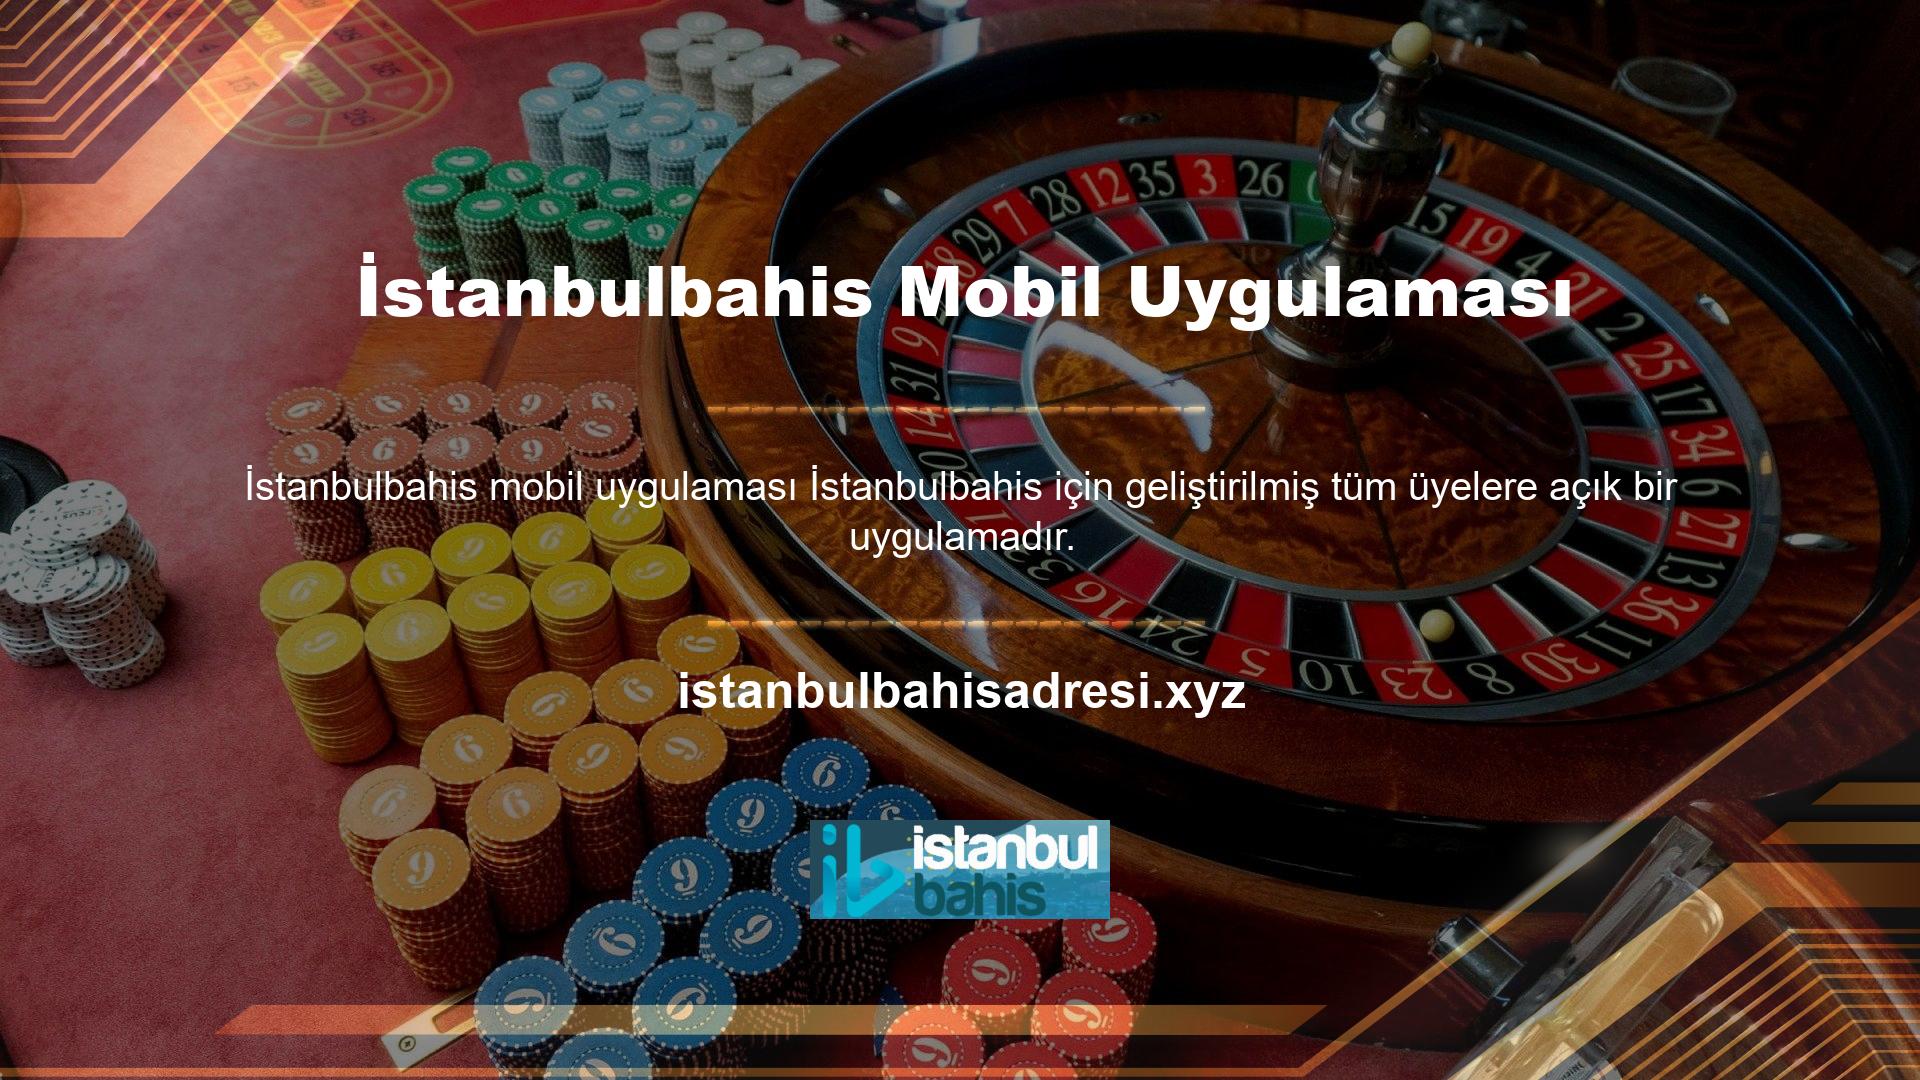 Oyun tutkunları İstanbulbahis mobil uygulamasına online mağazadan kolayca ulaşabilir ve cep telefonlarına indirerek hizmetlerini geliştirebilirler